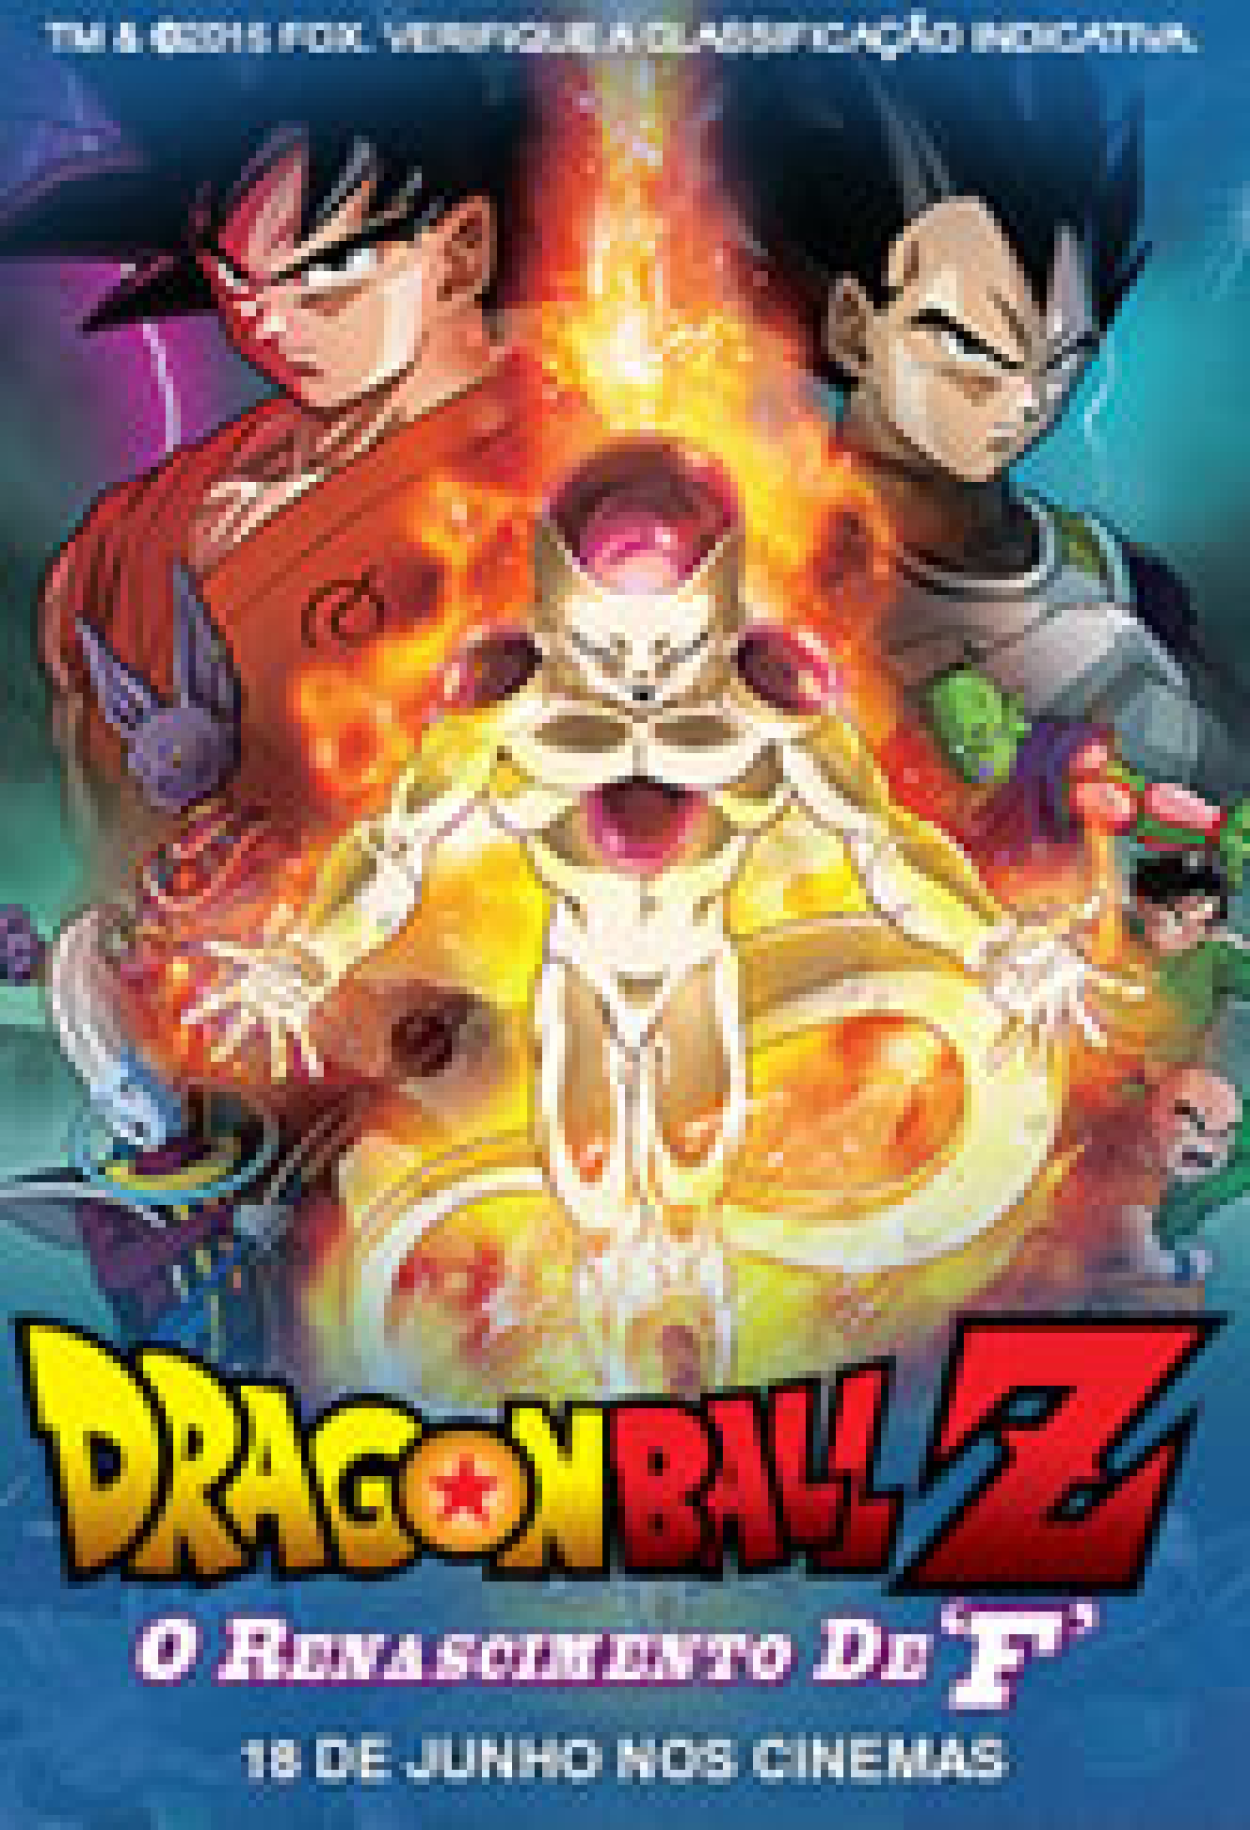 Dragon Ball Z: O Renascimento de F (Filme), Trailer, Sinopse e Curiosidades  - Cinema10